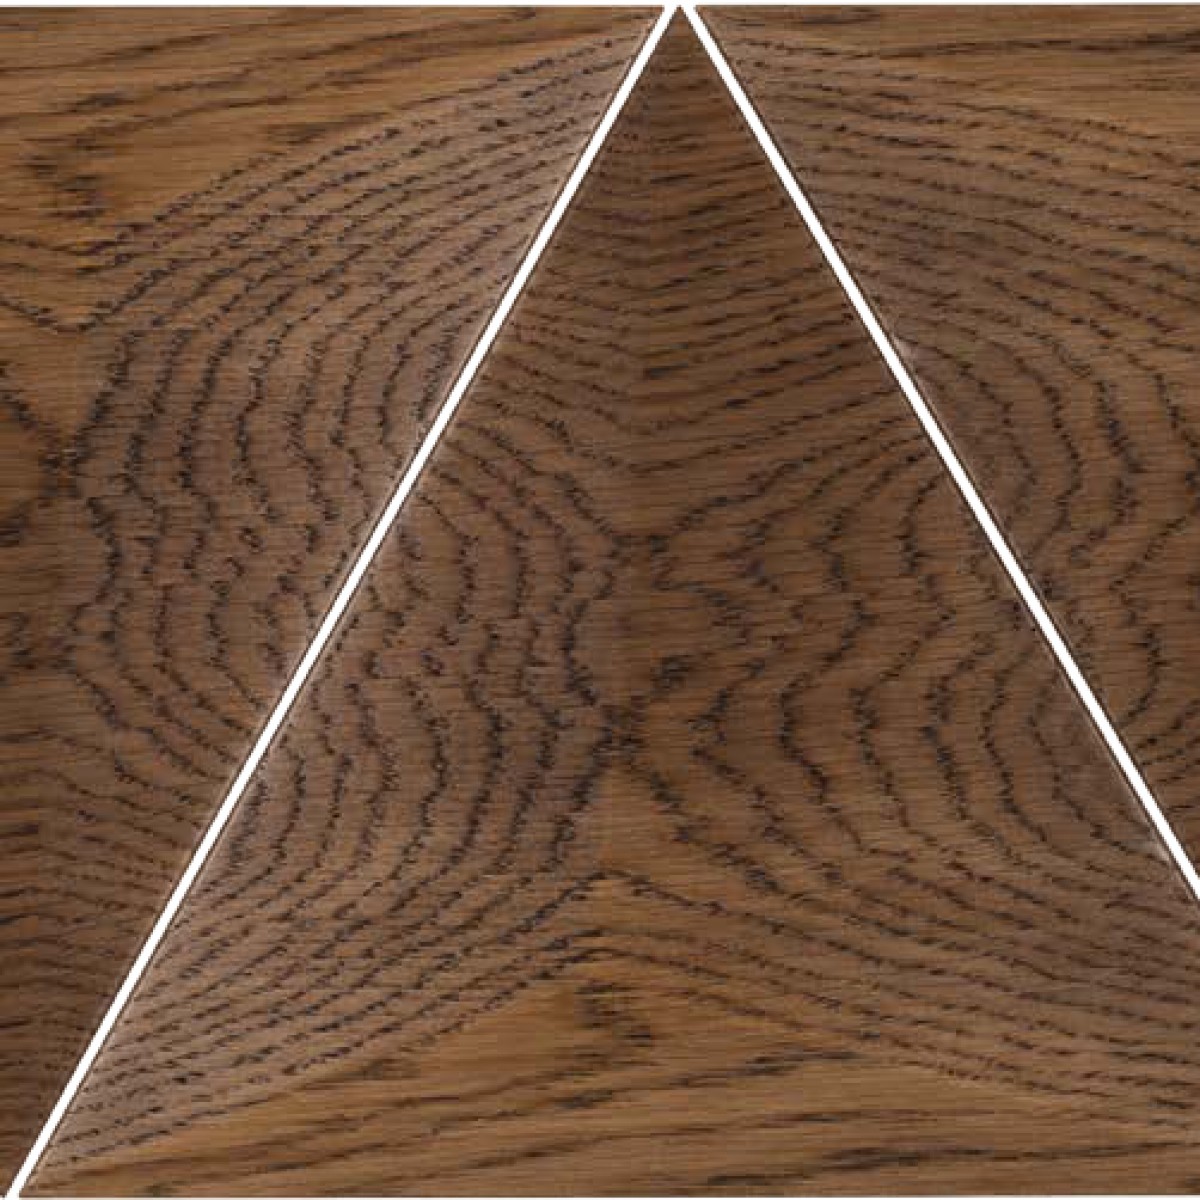 Panouri decorative 3D din lemn de stejar Pyramid, Panouri decorative din lemn 